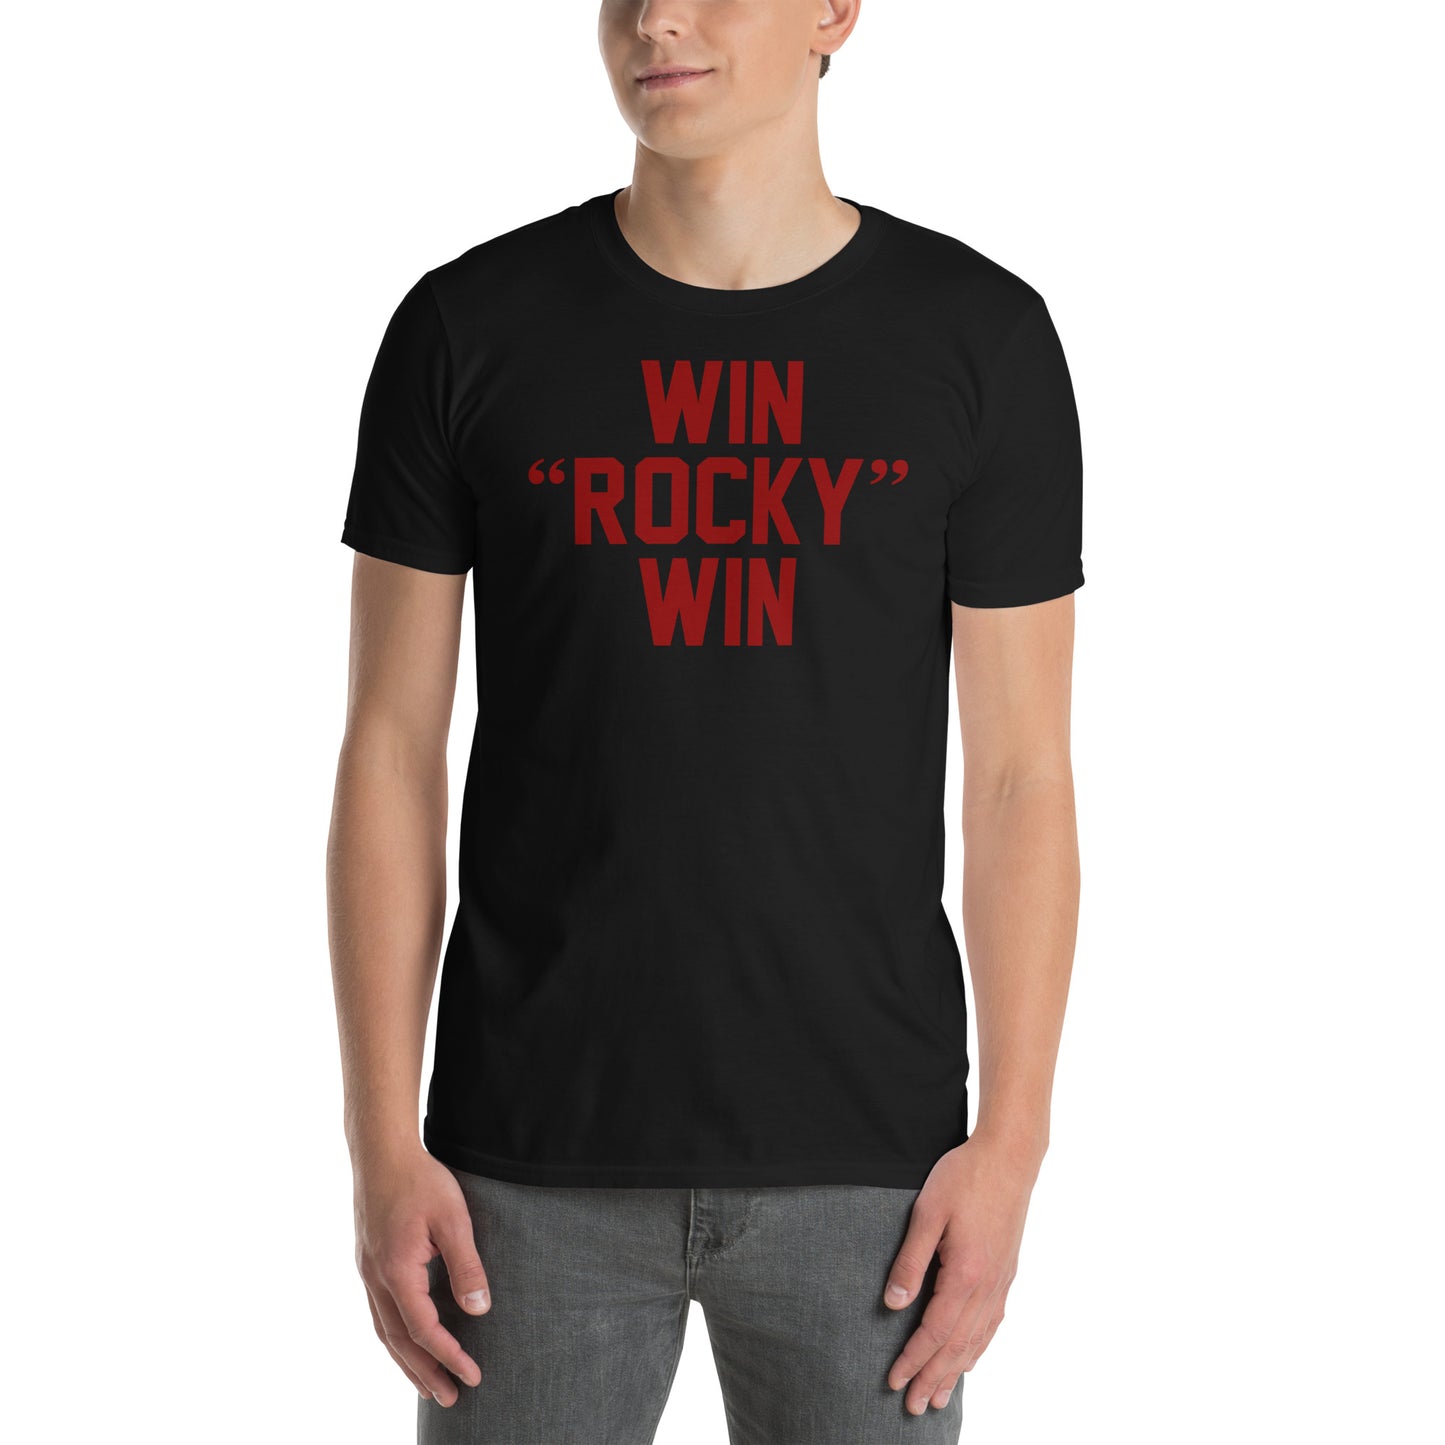 Camiseta Win Rocky Win de la película Rocky. Color negro.